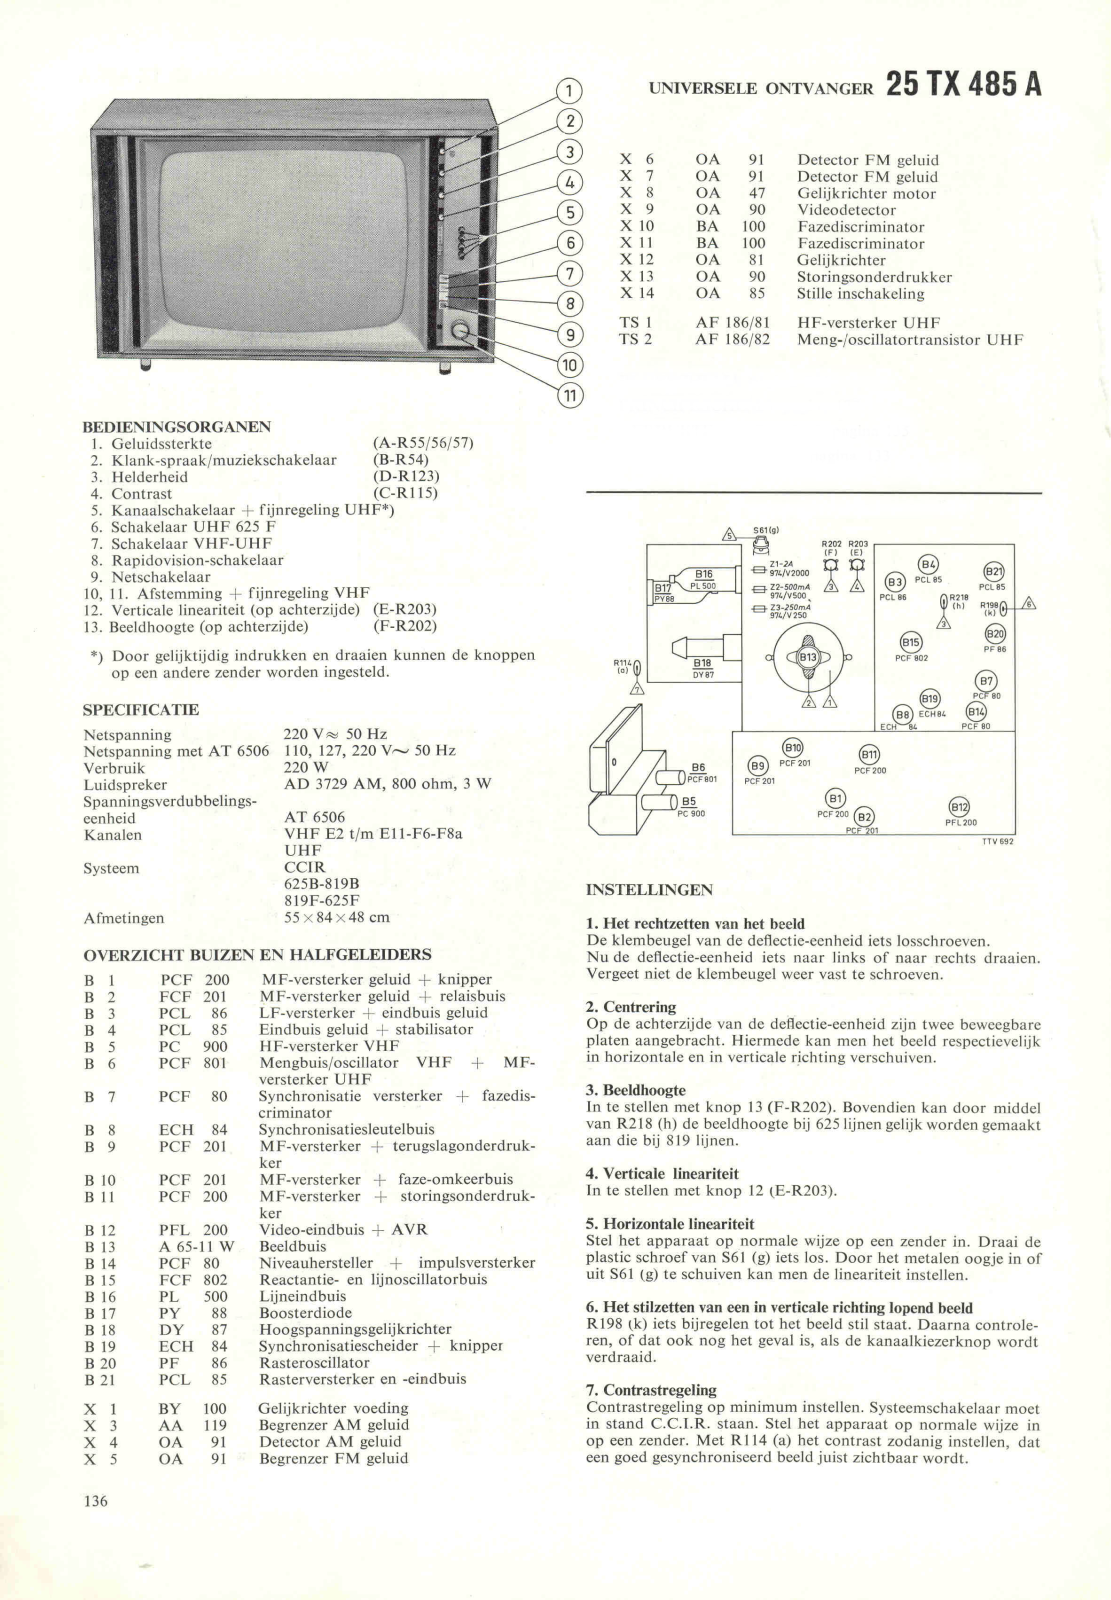 Philips 23TX485A Schematic